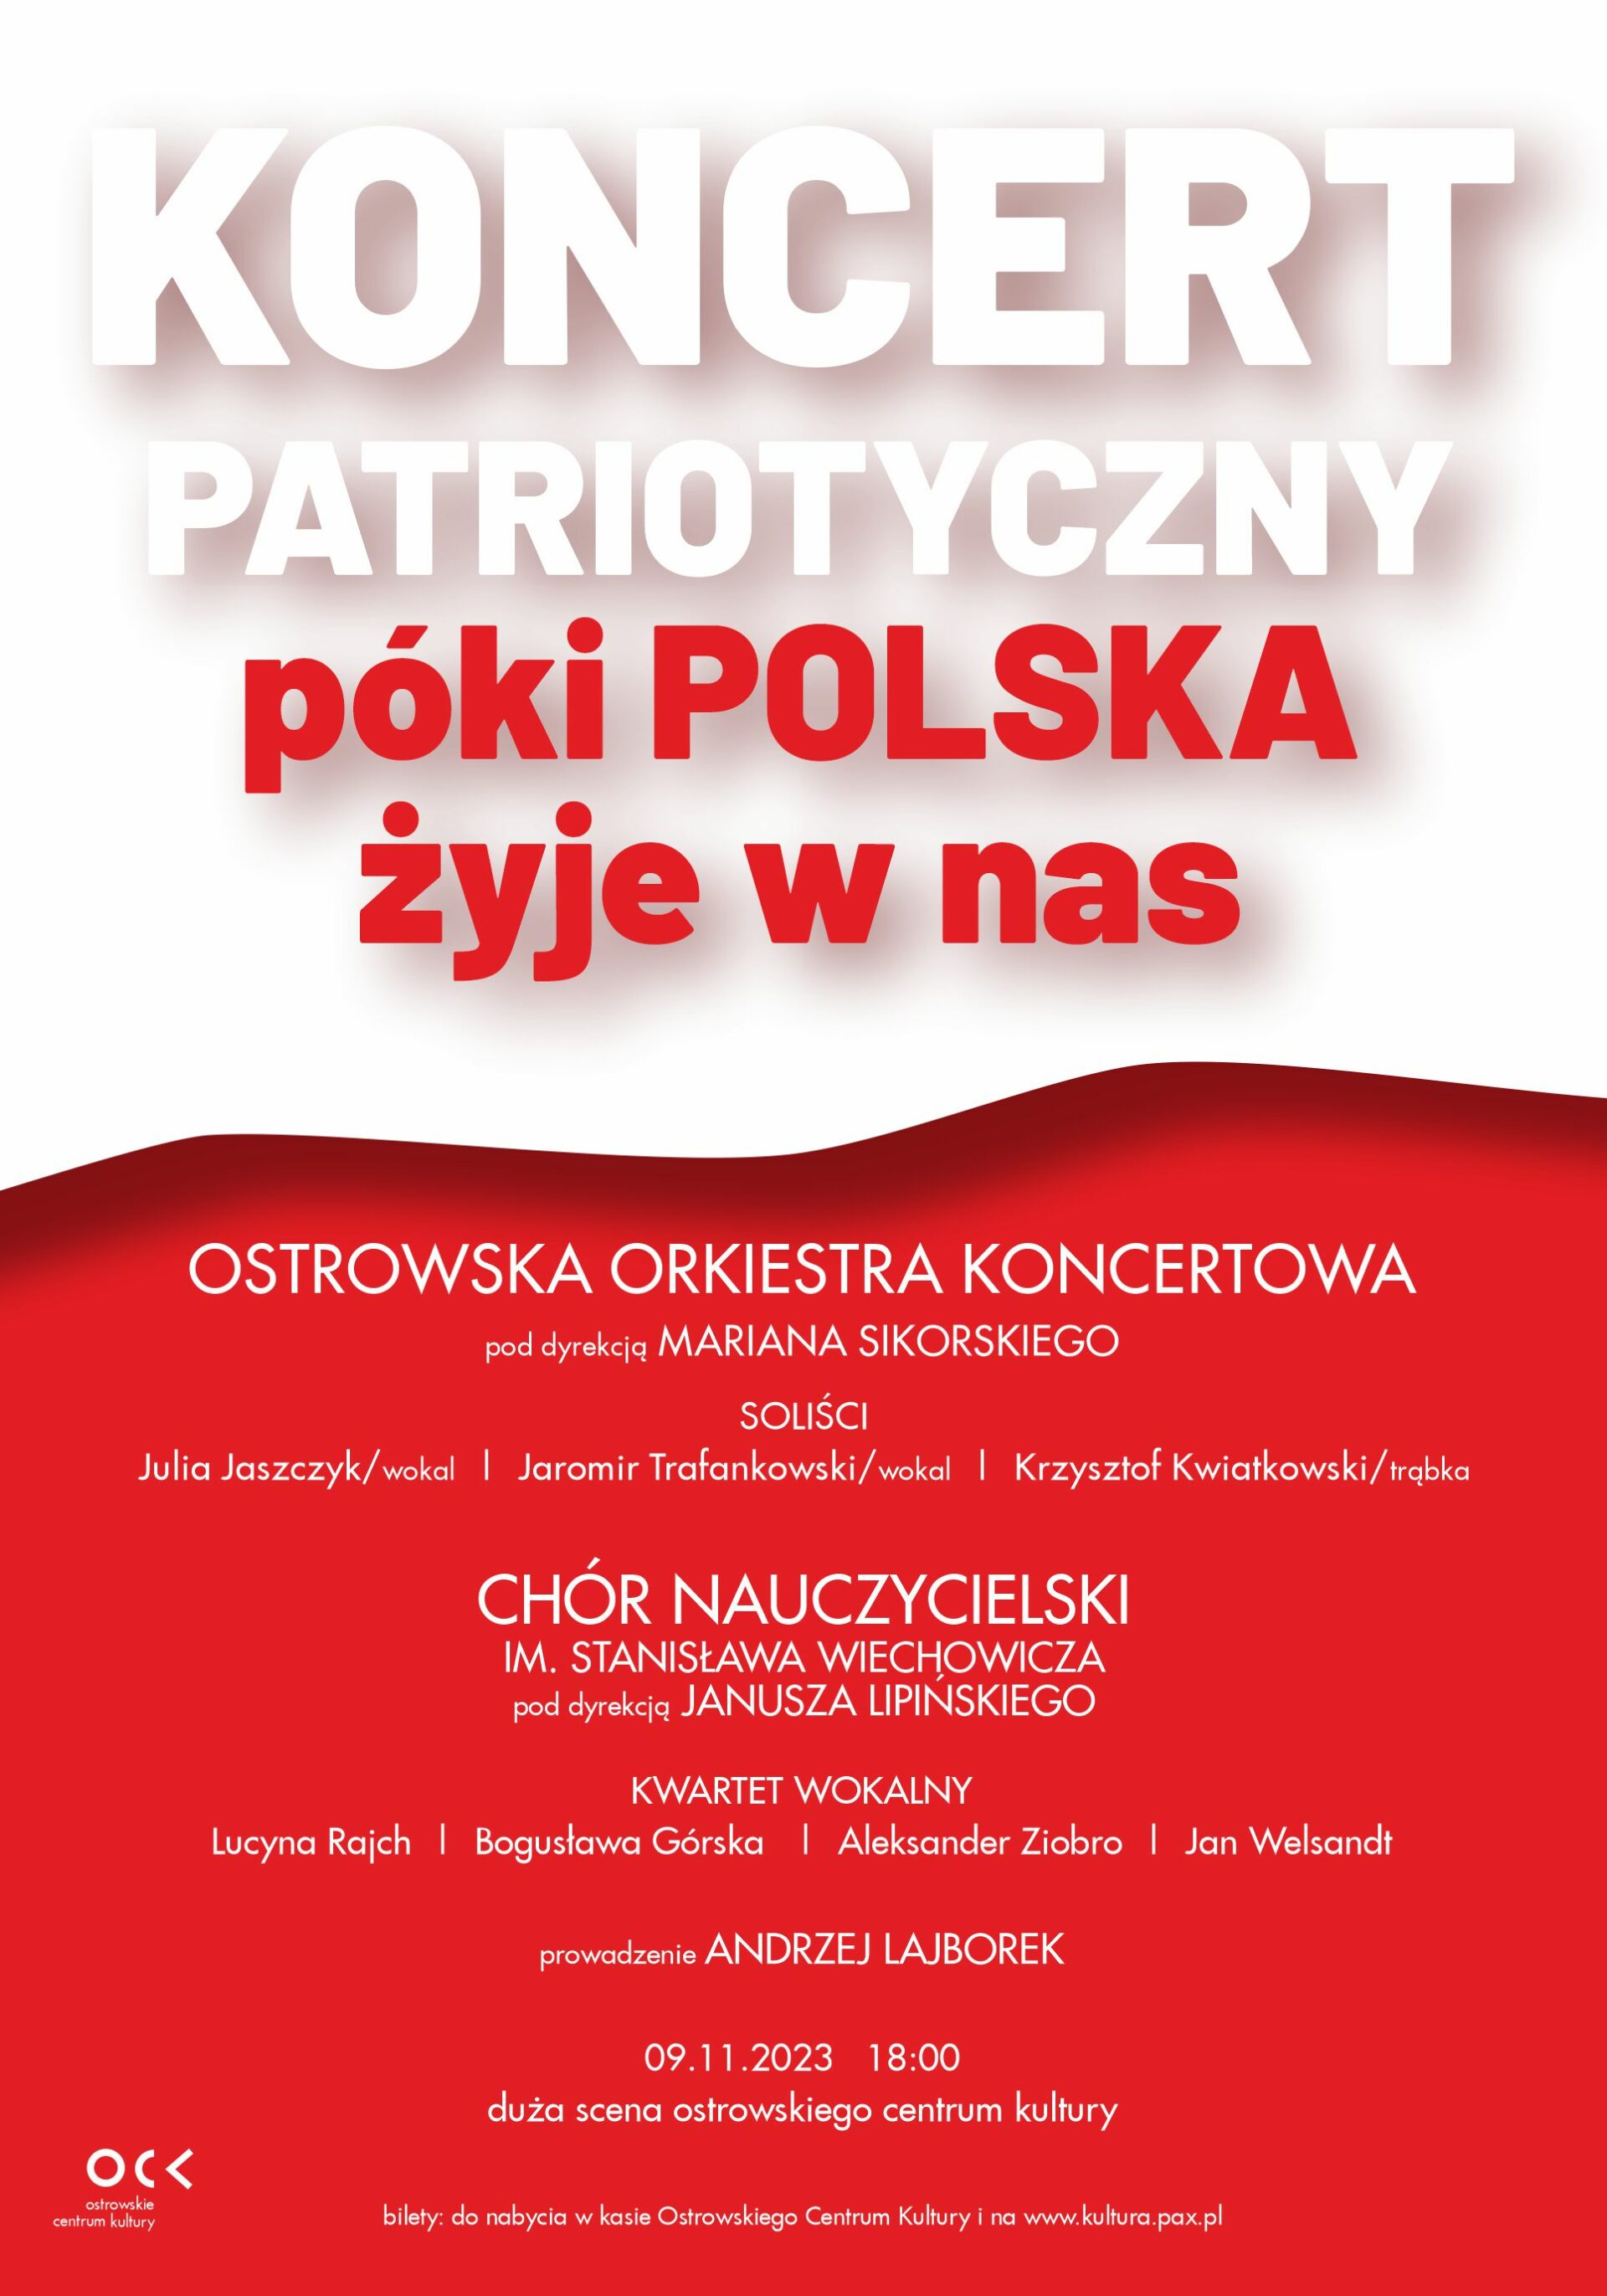 Koncert patriotyczny | Póki Polska żyje w nas